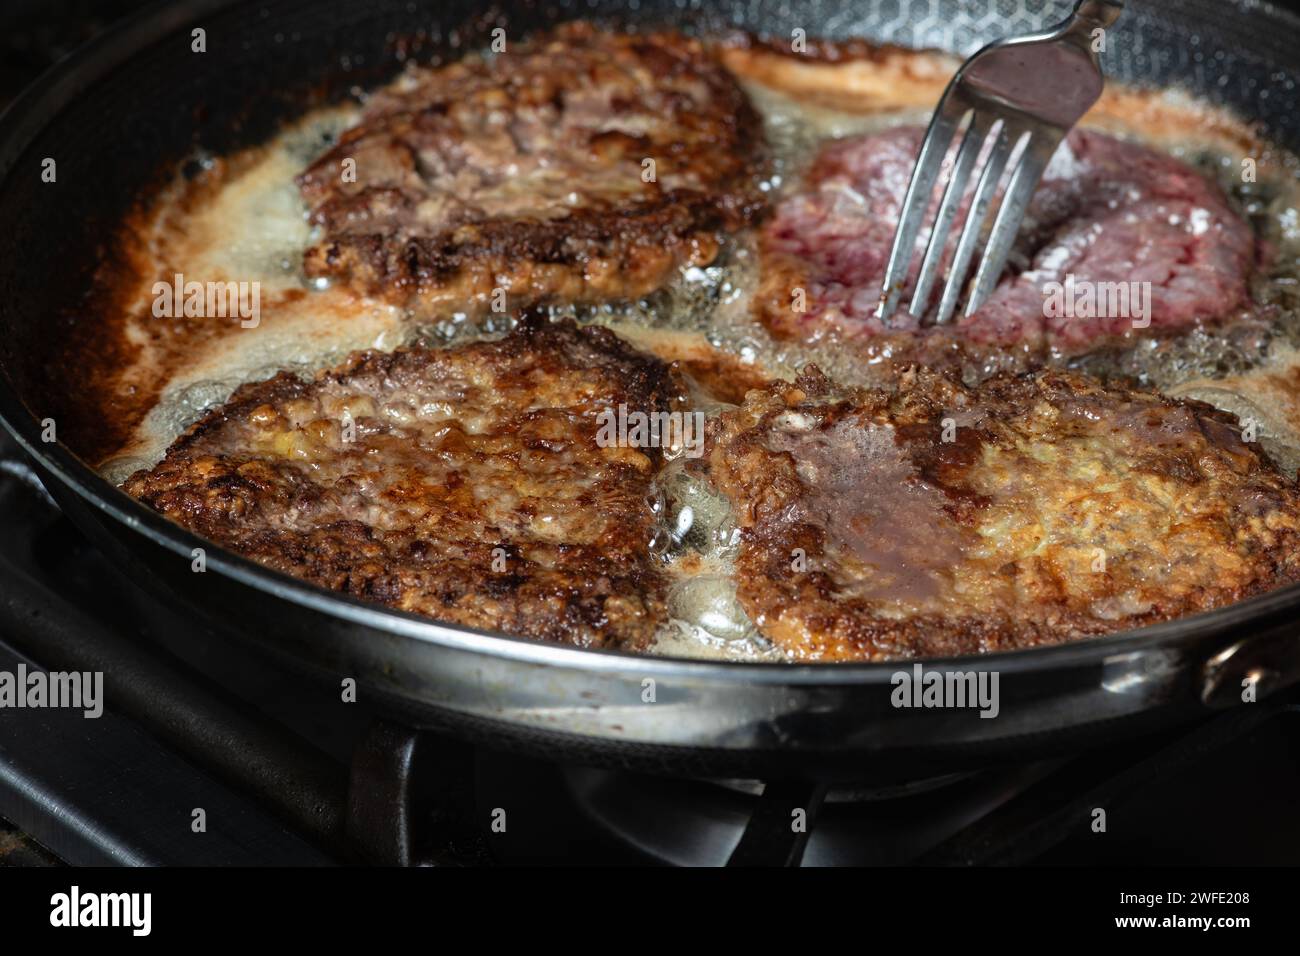 Schnitzel frit dans une poêle sur la table de cuisson à gaz. Concept de cuisine maison. Banque D'Images